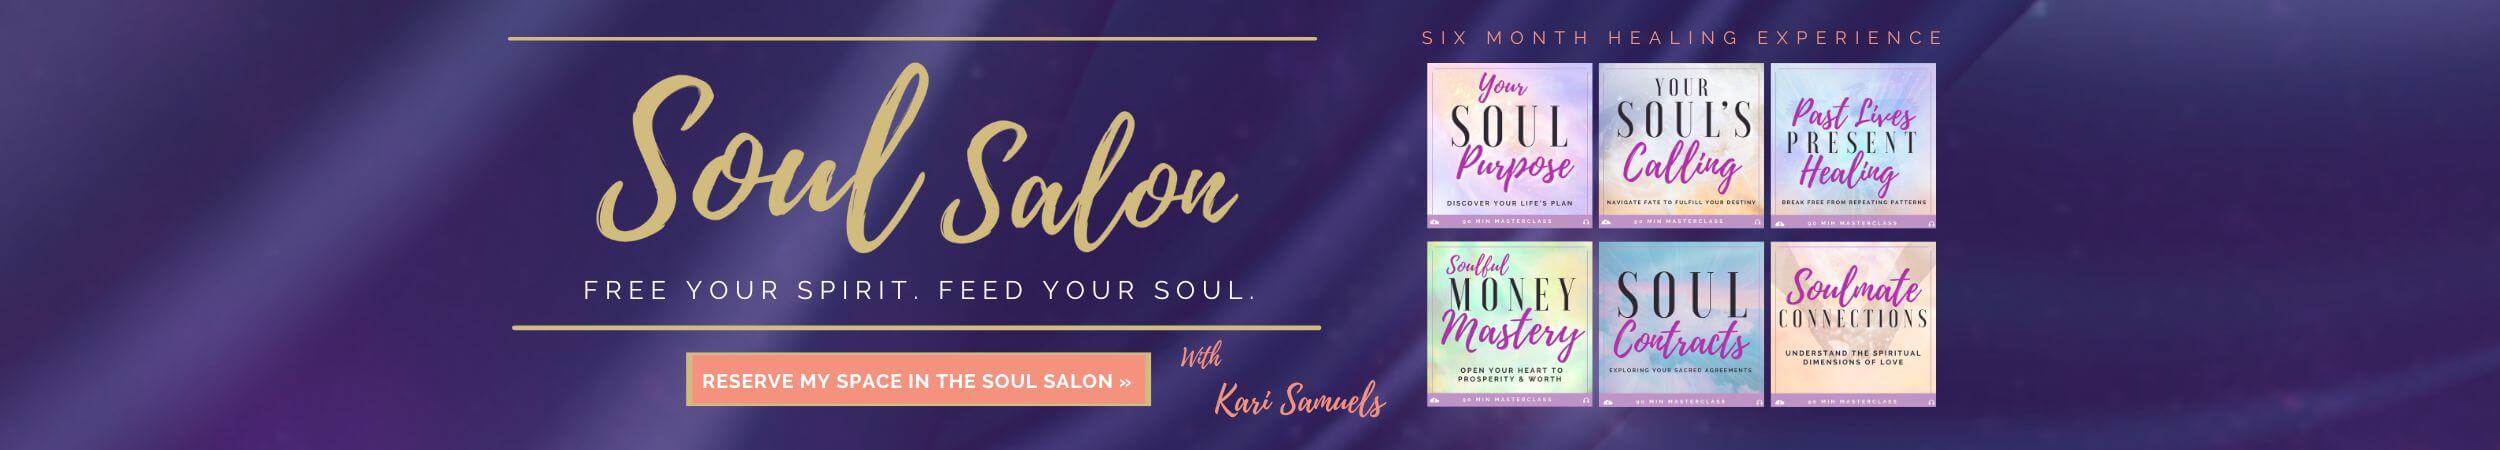 soul salon 